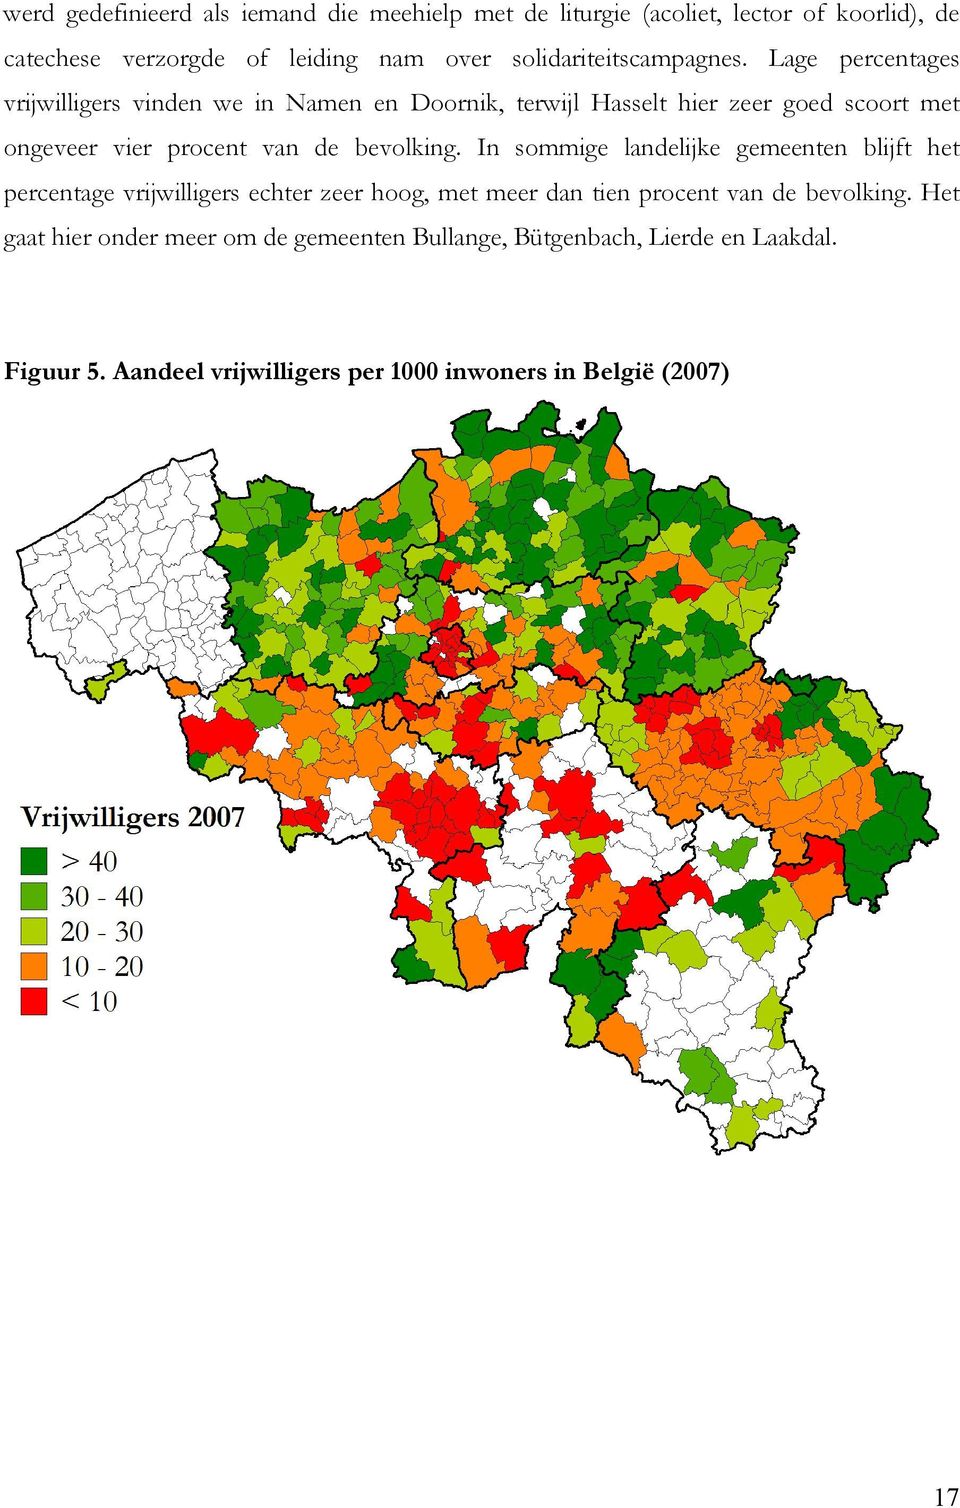 Lage percentages vrijwilligers vinden we in Namen en Doornik, terwijl Hasselt hier zeer goed scoort met ongeveer vier procent van de bevolking.